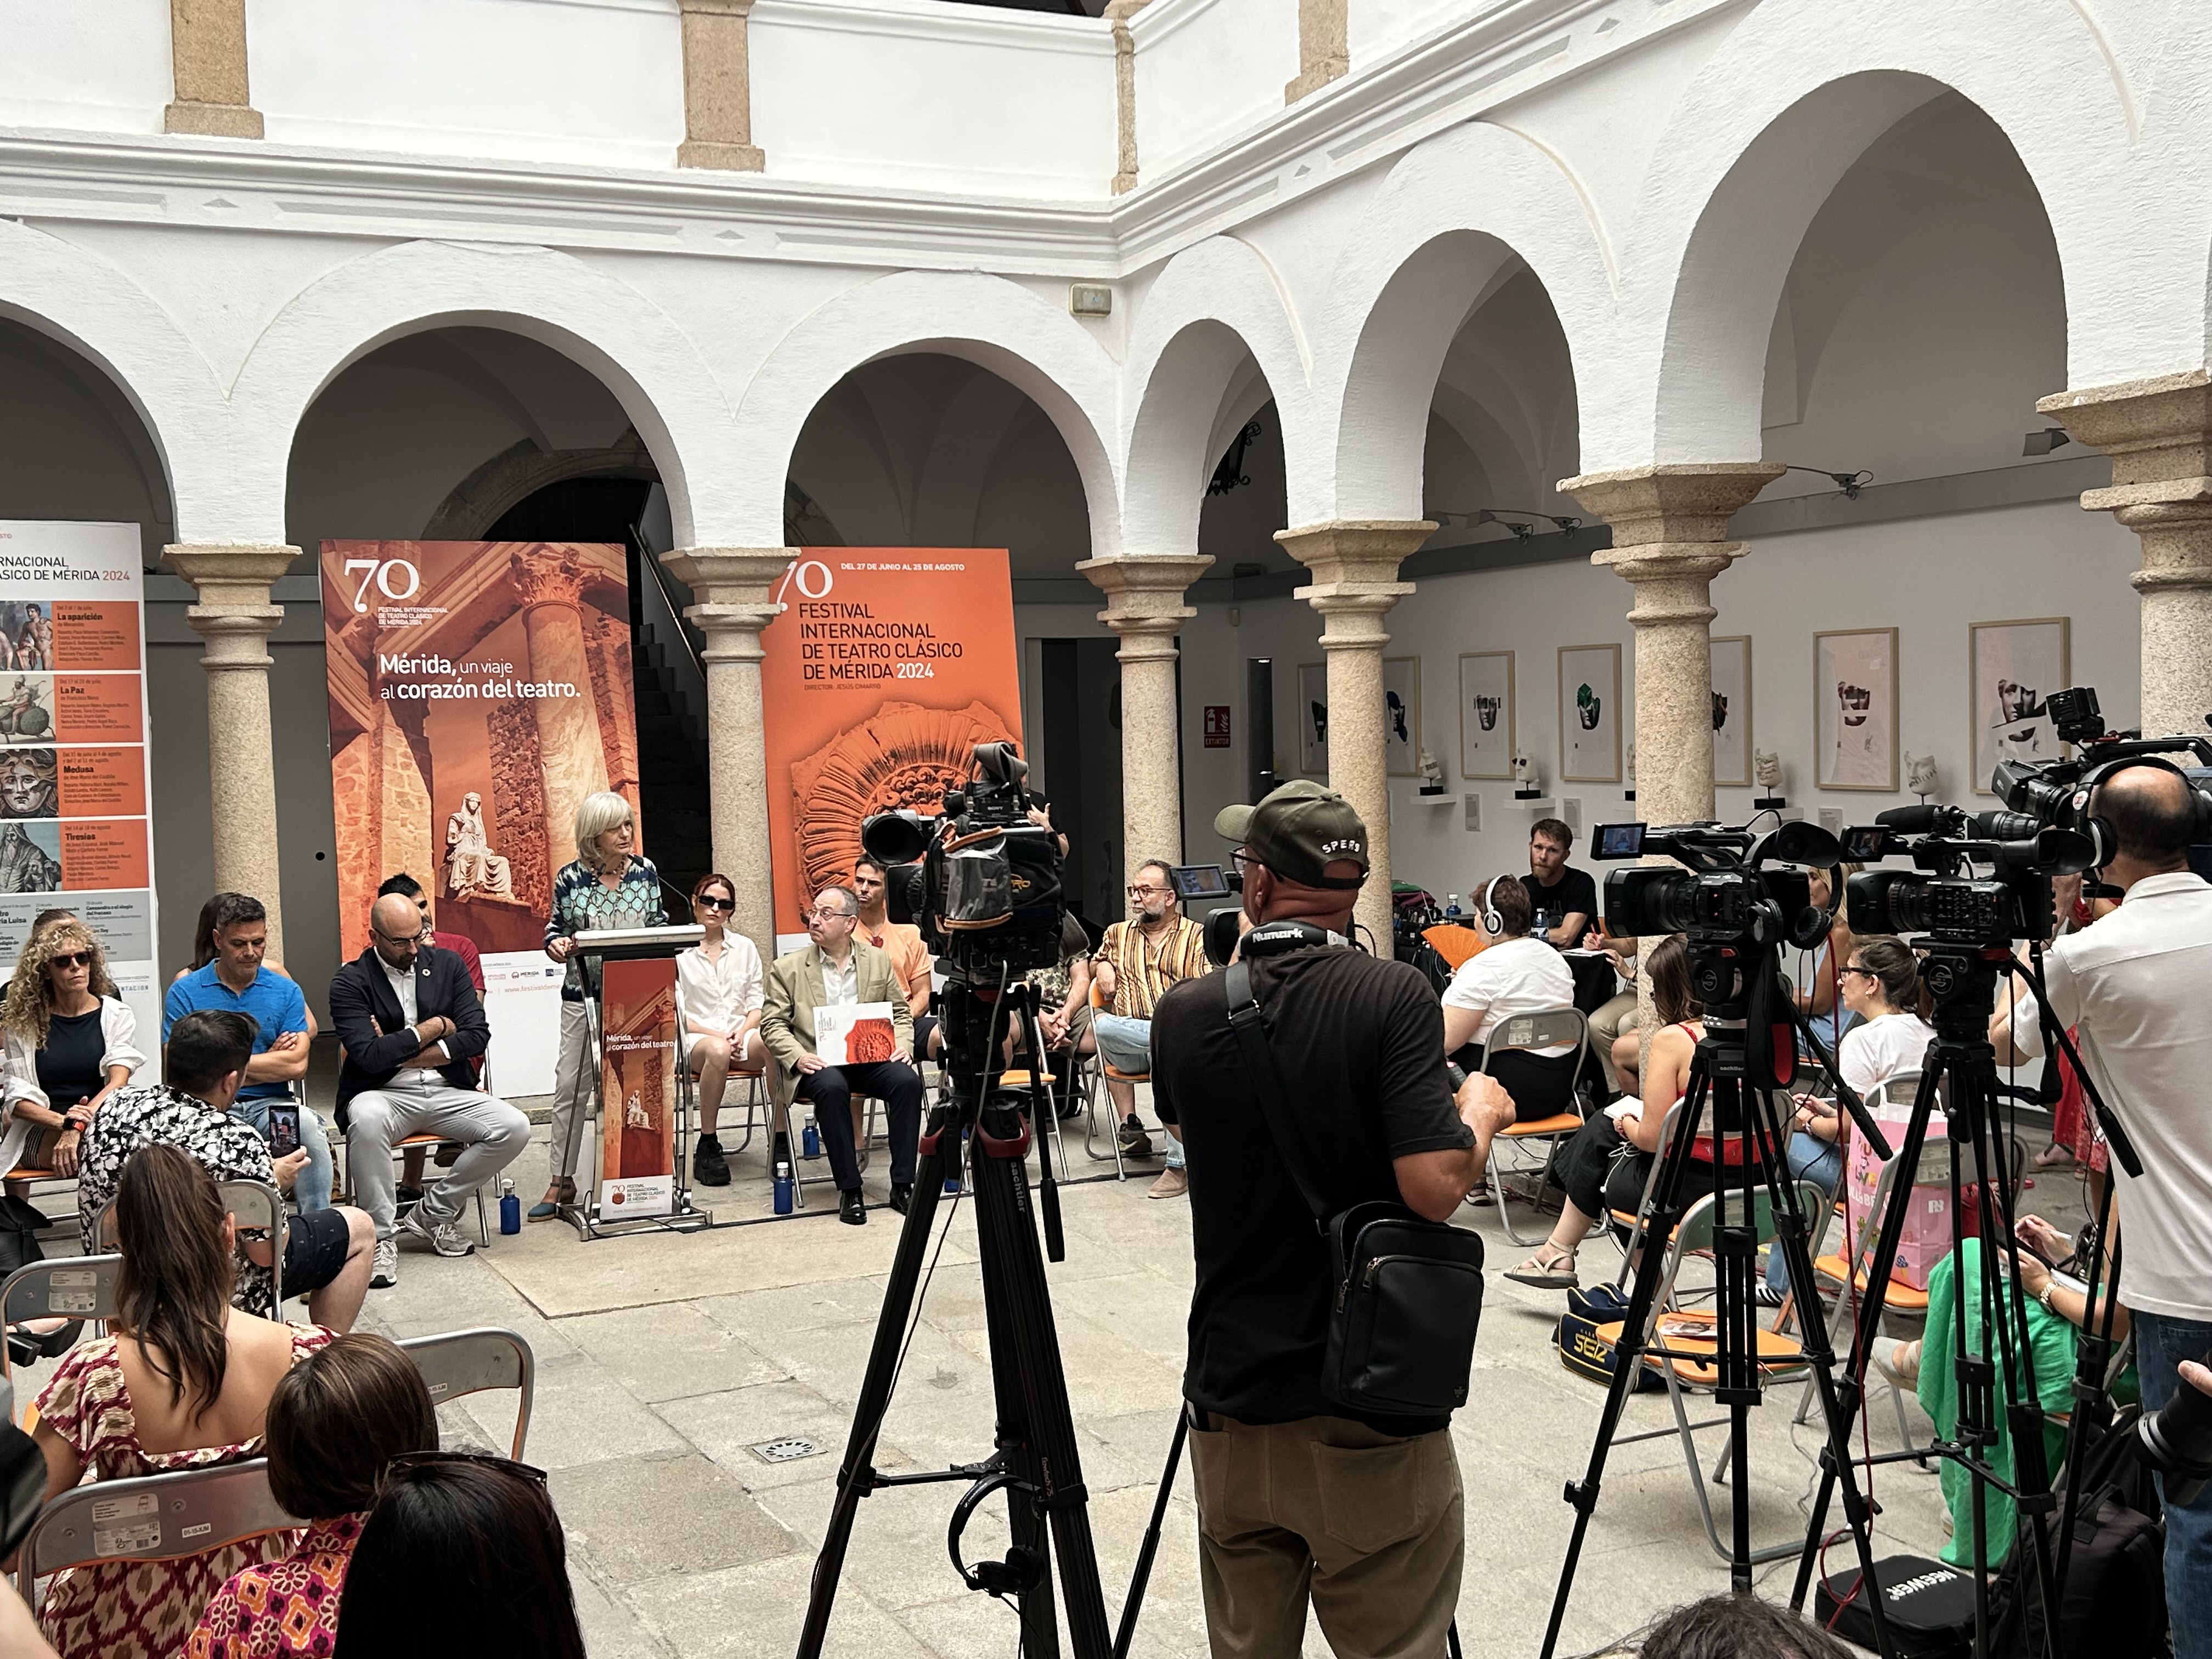 Image 4 of article Bazaga destaca la repercusión socioeconómica del Festival de Mérida en la presentación de 'Coriolano', de Shakespeare